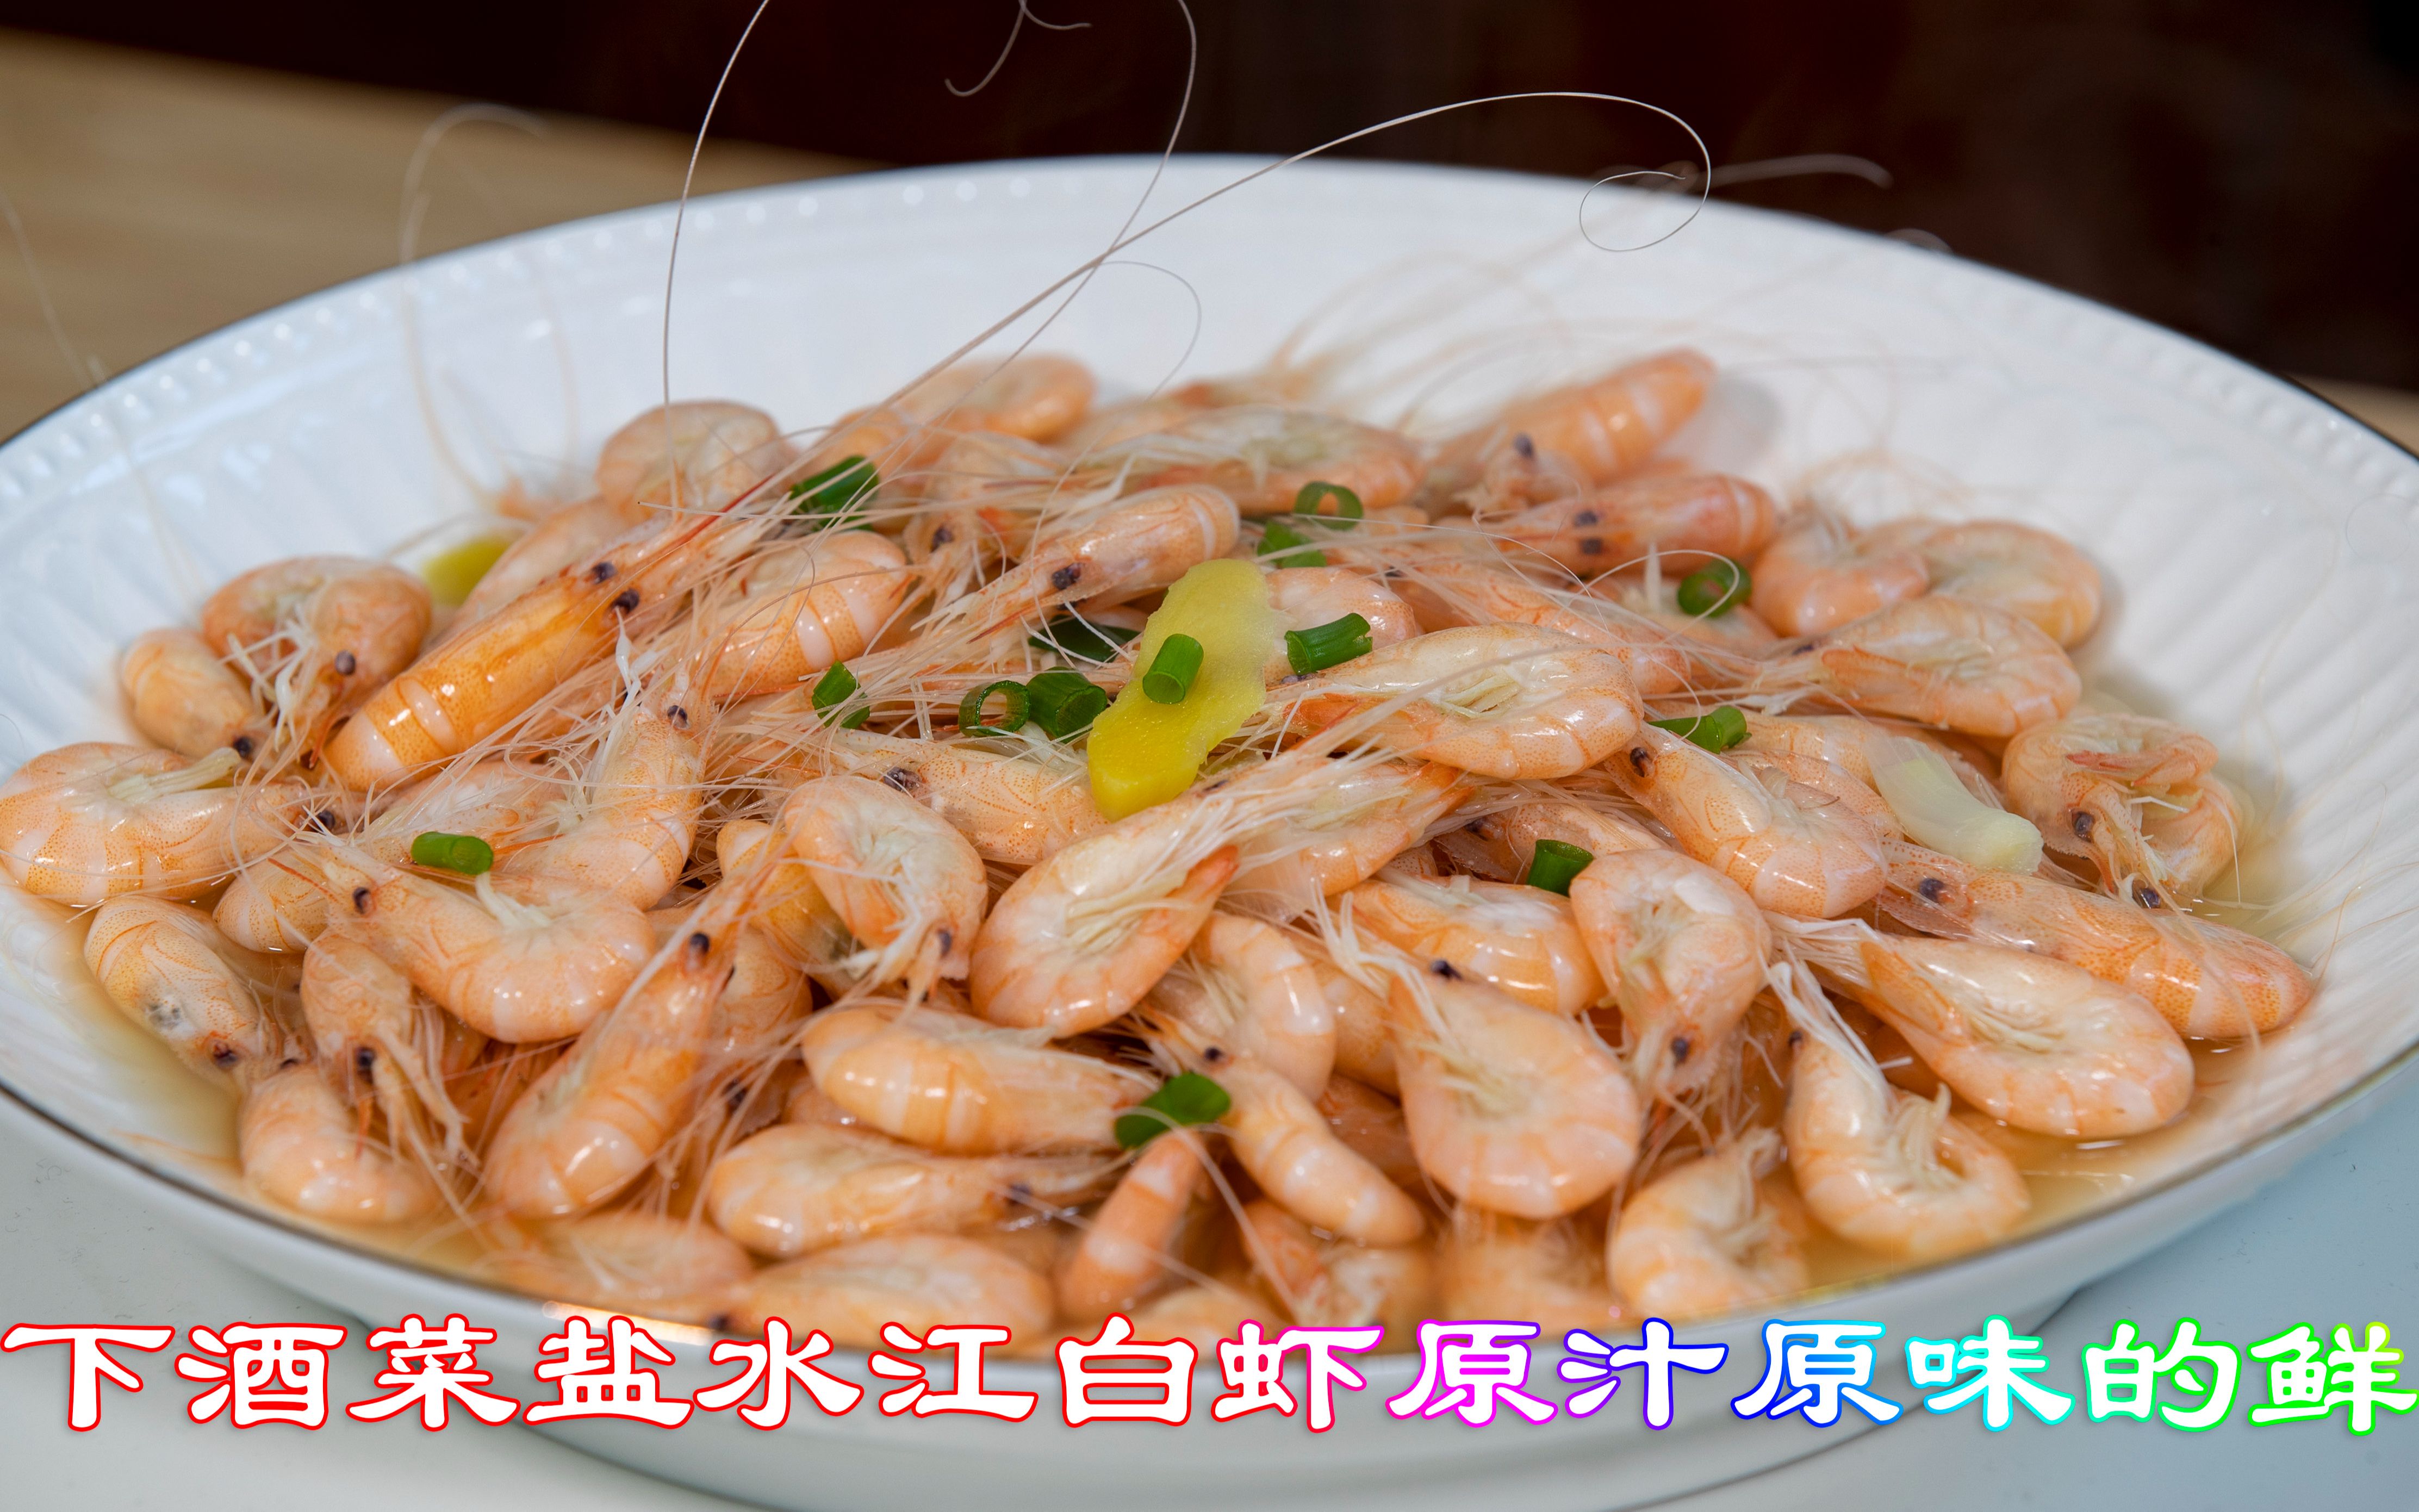 下酒菜盐水江白虾原汁原味的鲜,做法简单一看就会味道鲜美小白虾